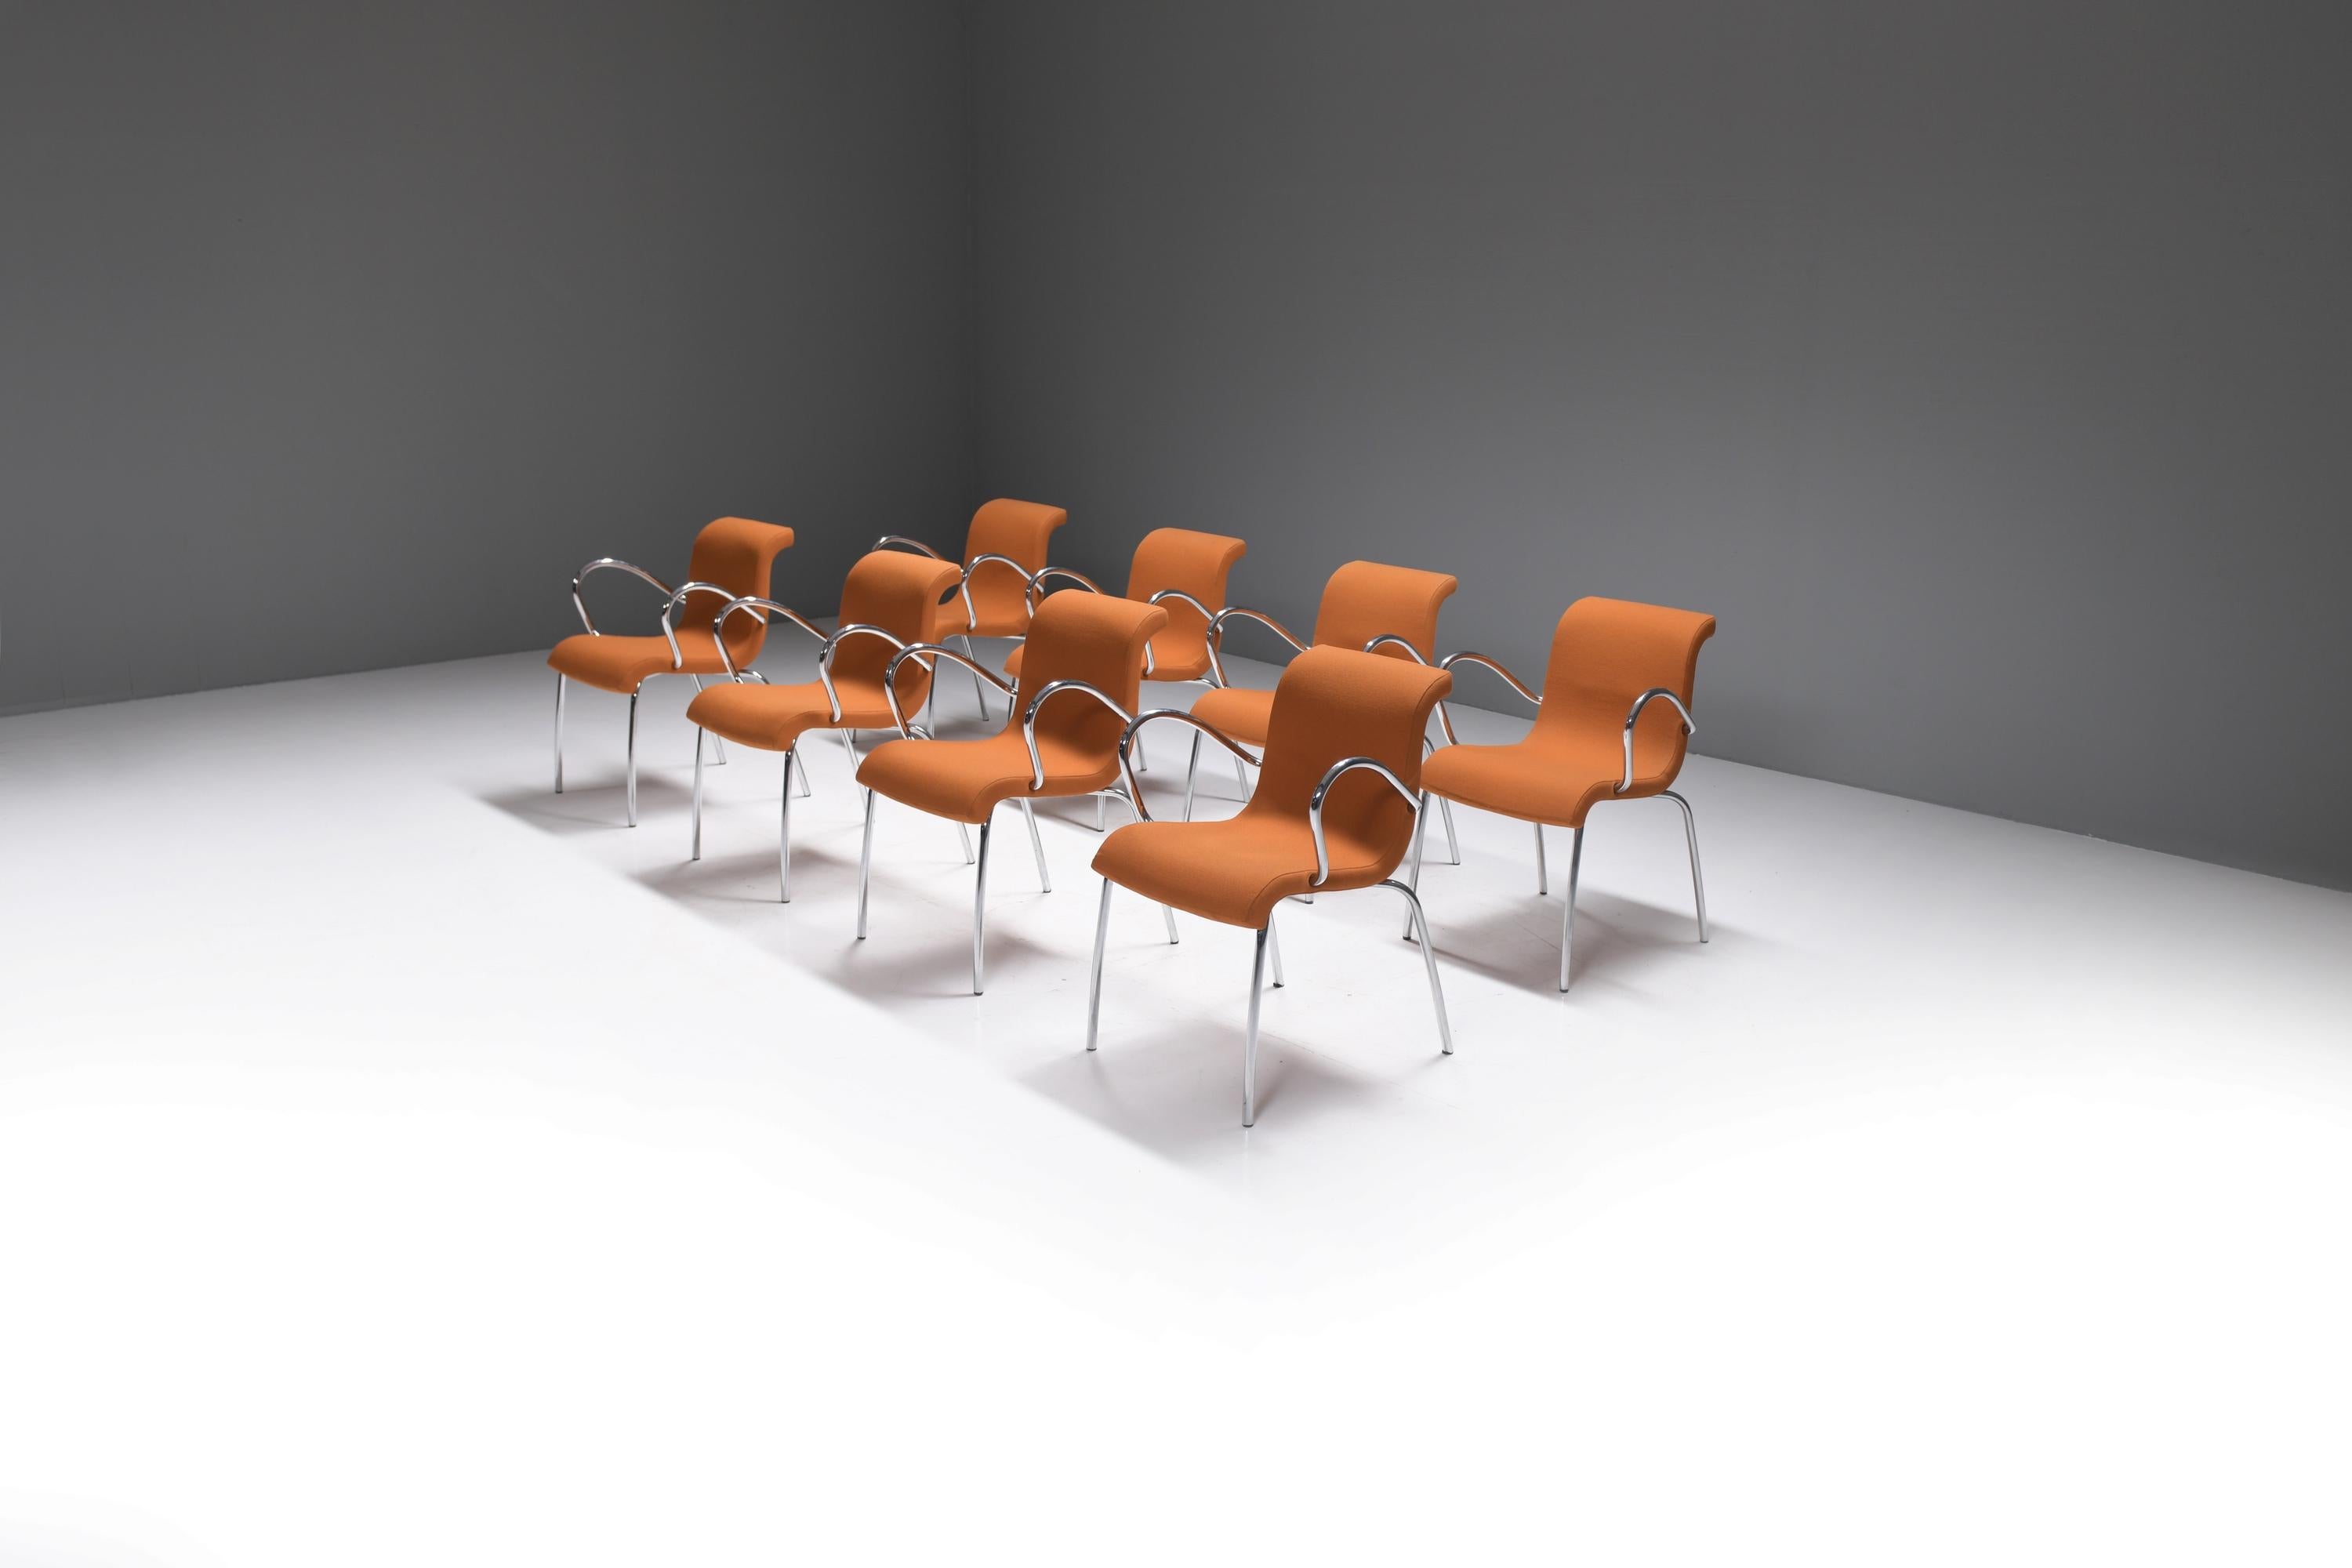 Tolle Sesselgarnitur von VLAG in orangefarbenem Stoff.  
Entworfen und hergestellt von dem niederländischen Designer Gerard van den Berg.

Der Multifunktionsstuhl Vlag ist in Form einer wehenden Fahne gestaltet. Die Bewegung ist im Design noch